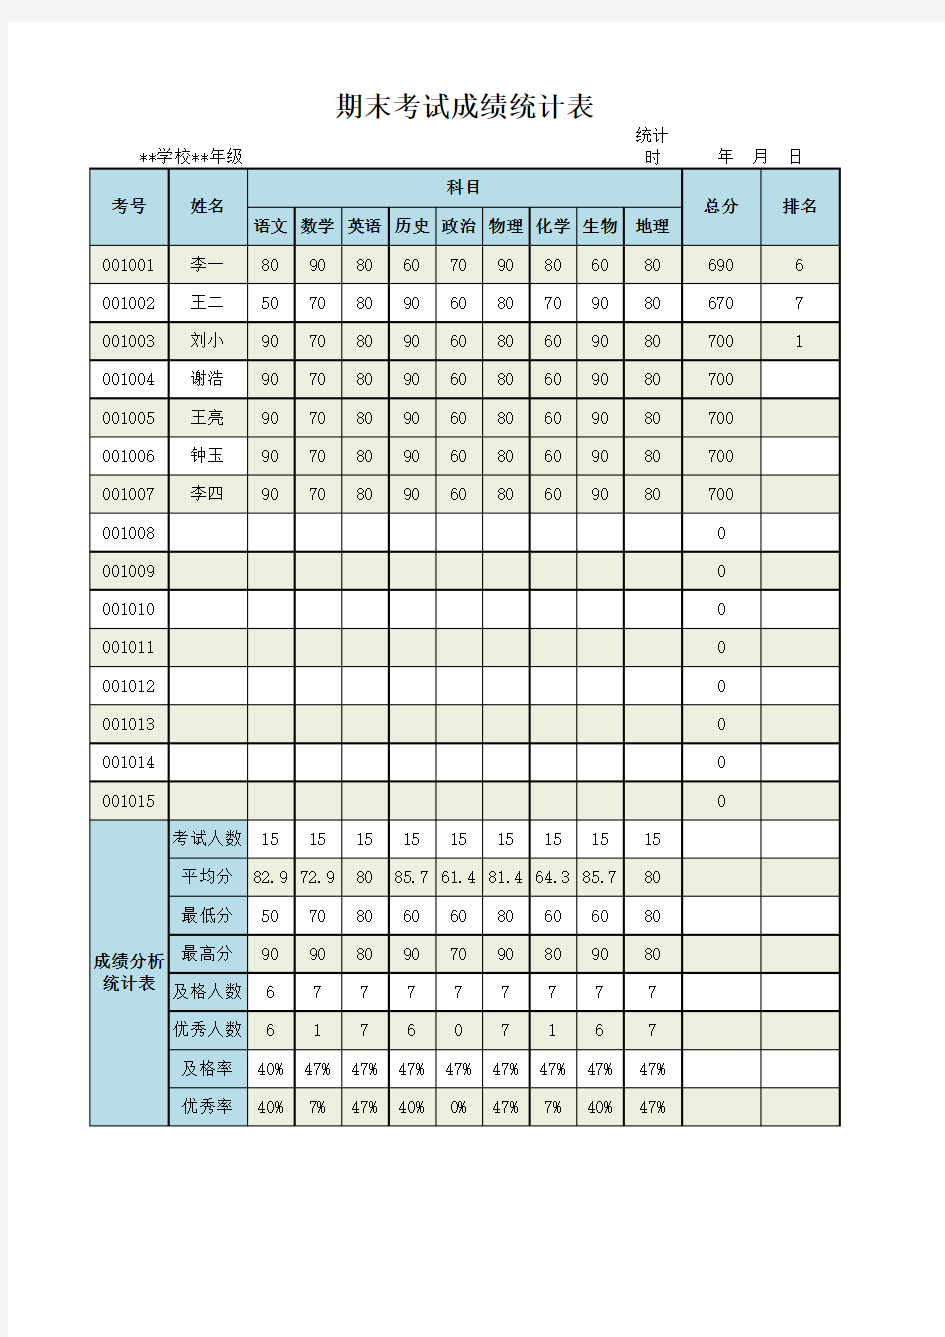 学生期末考试成绩统计表Excel模板(推荐)